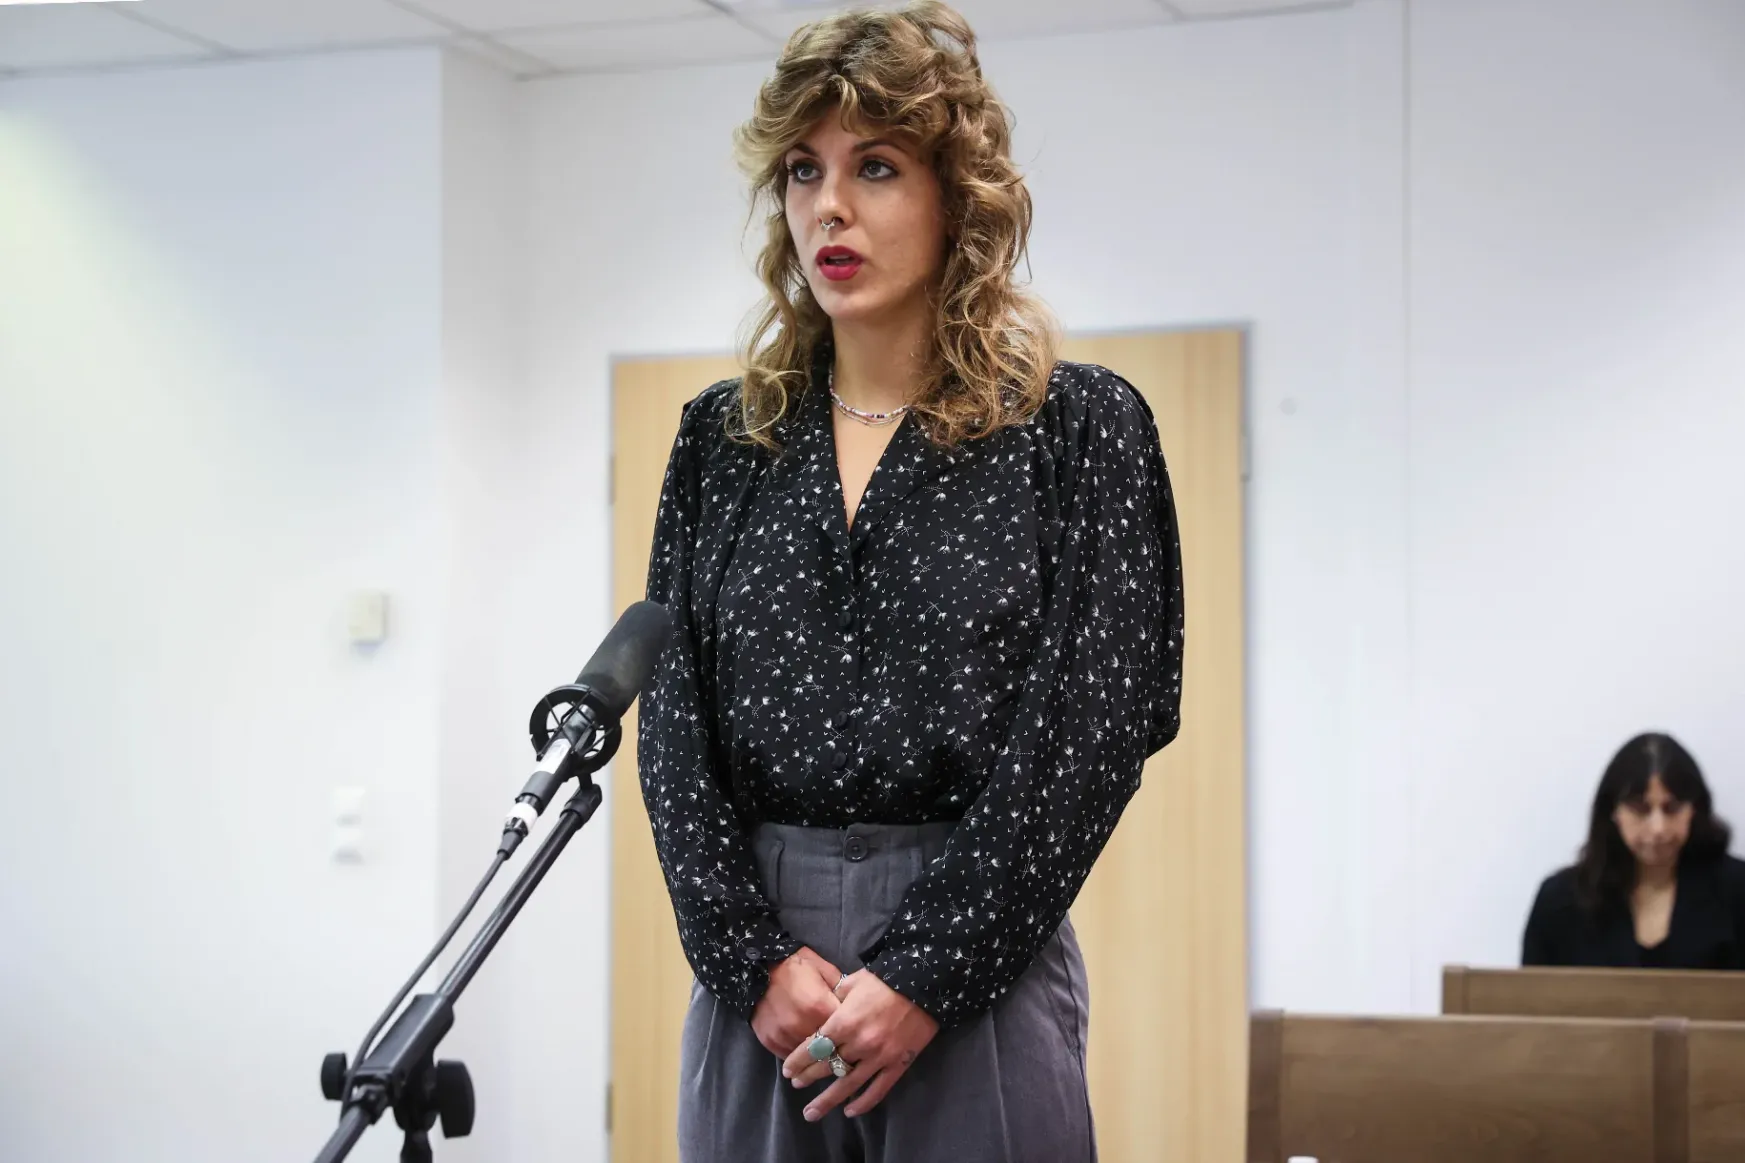 Szilágyi Liliána a bíróságon: Arra keltem fel, hogy apám megmerevedett nemi szerve hozzám nyomódik